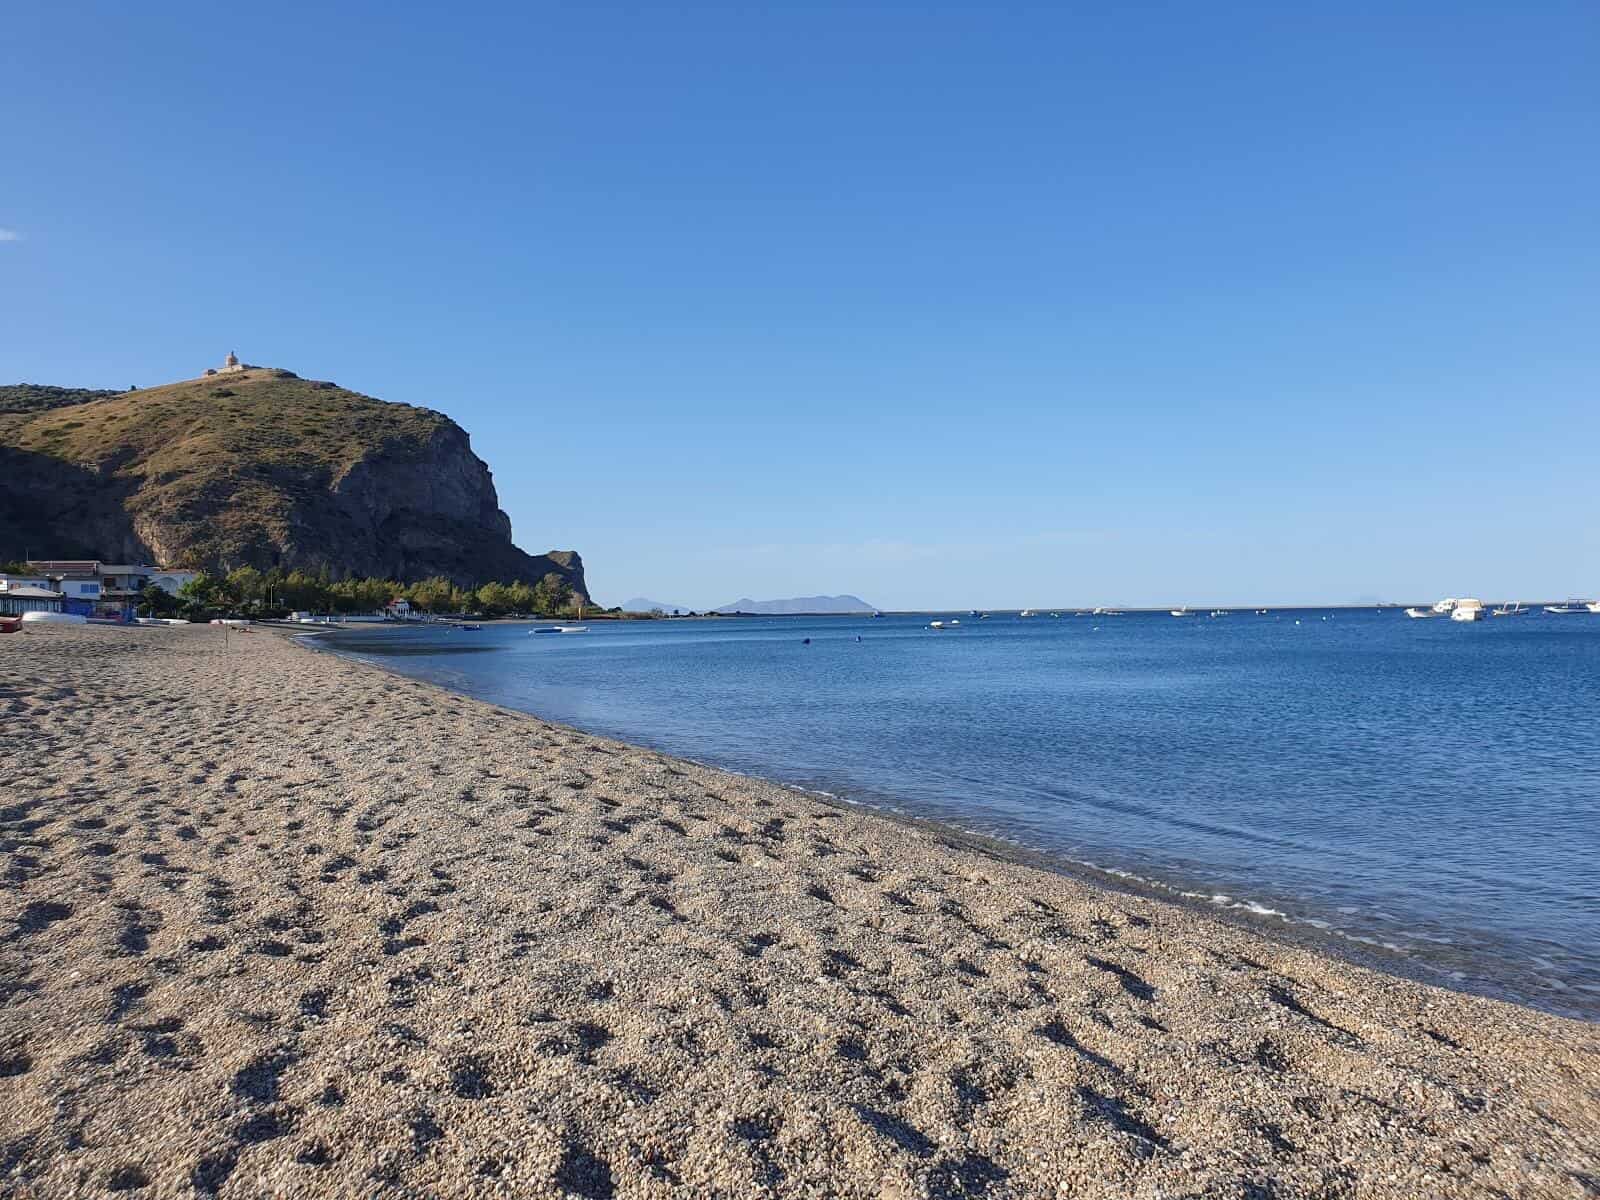 Spiaggia Marinello beach in Sicily